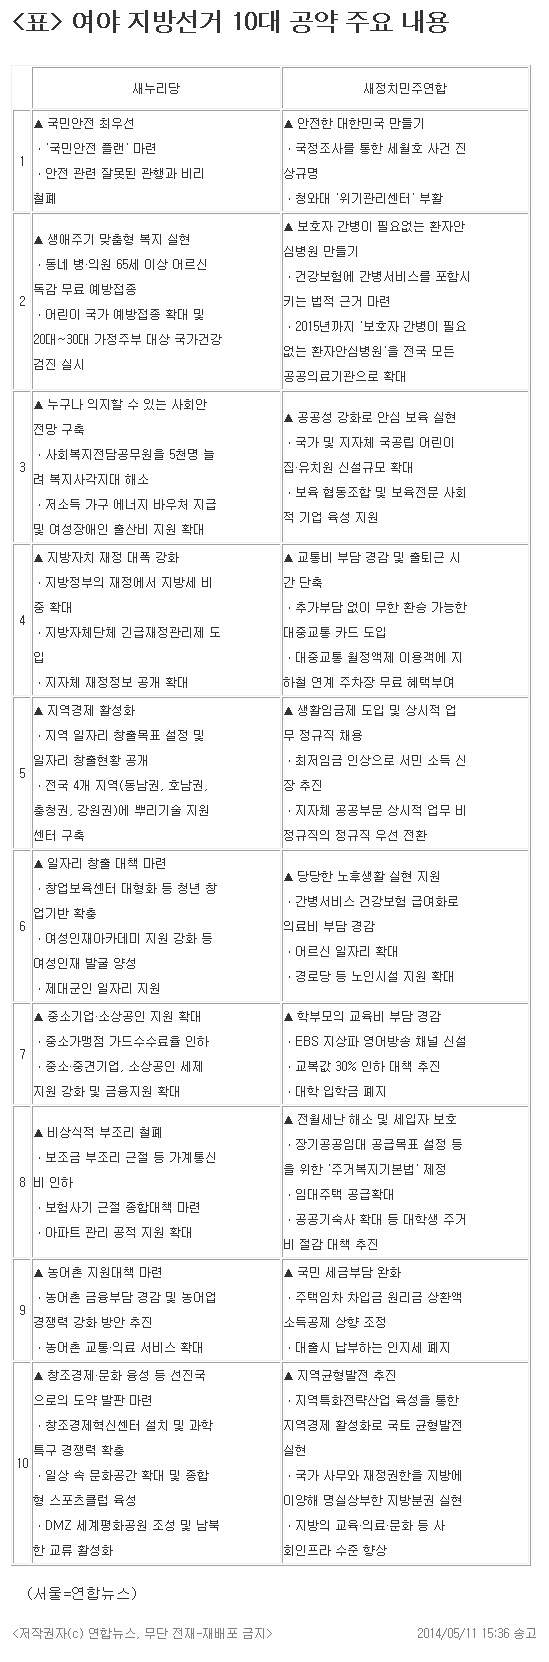 <표> 여야 지방선거 10대 공약 주요 내용